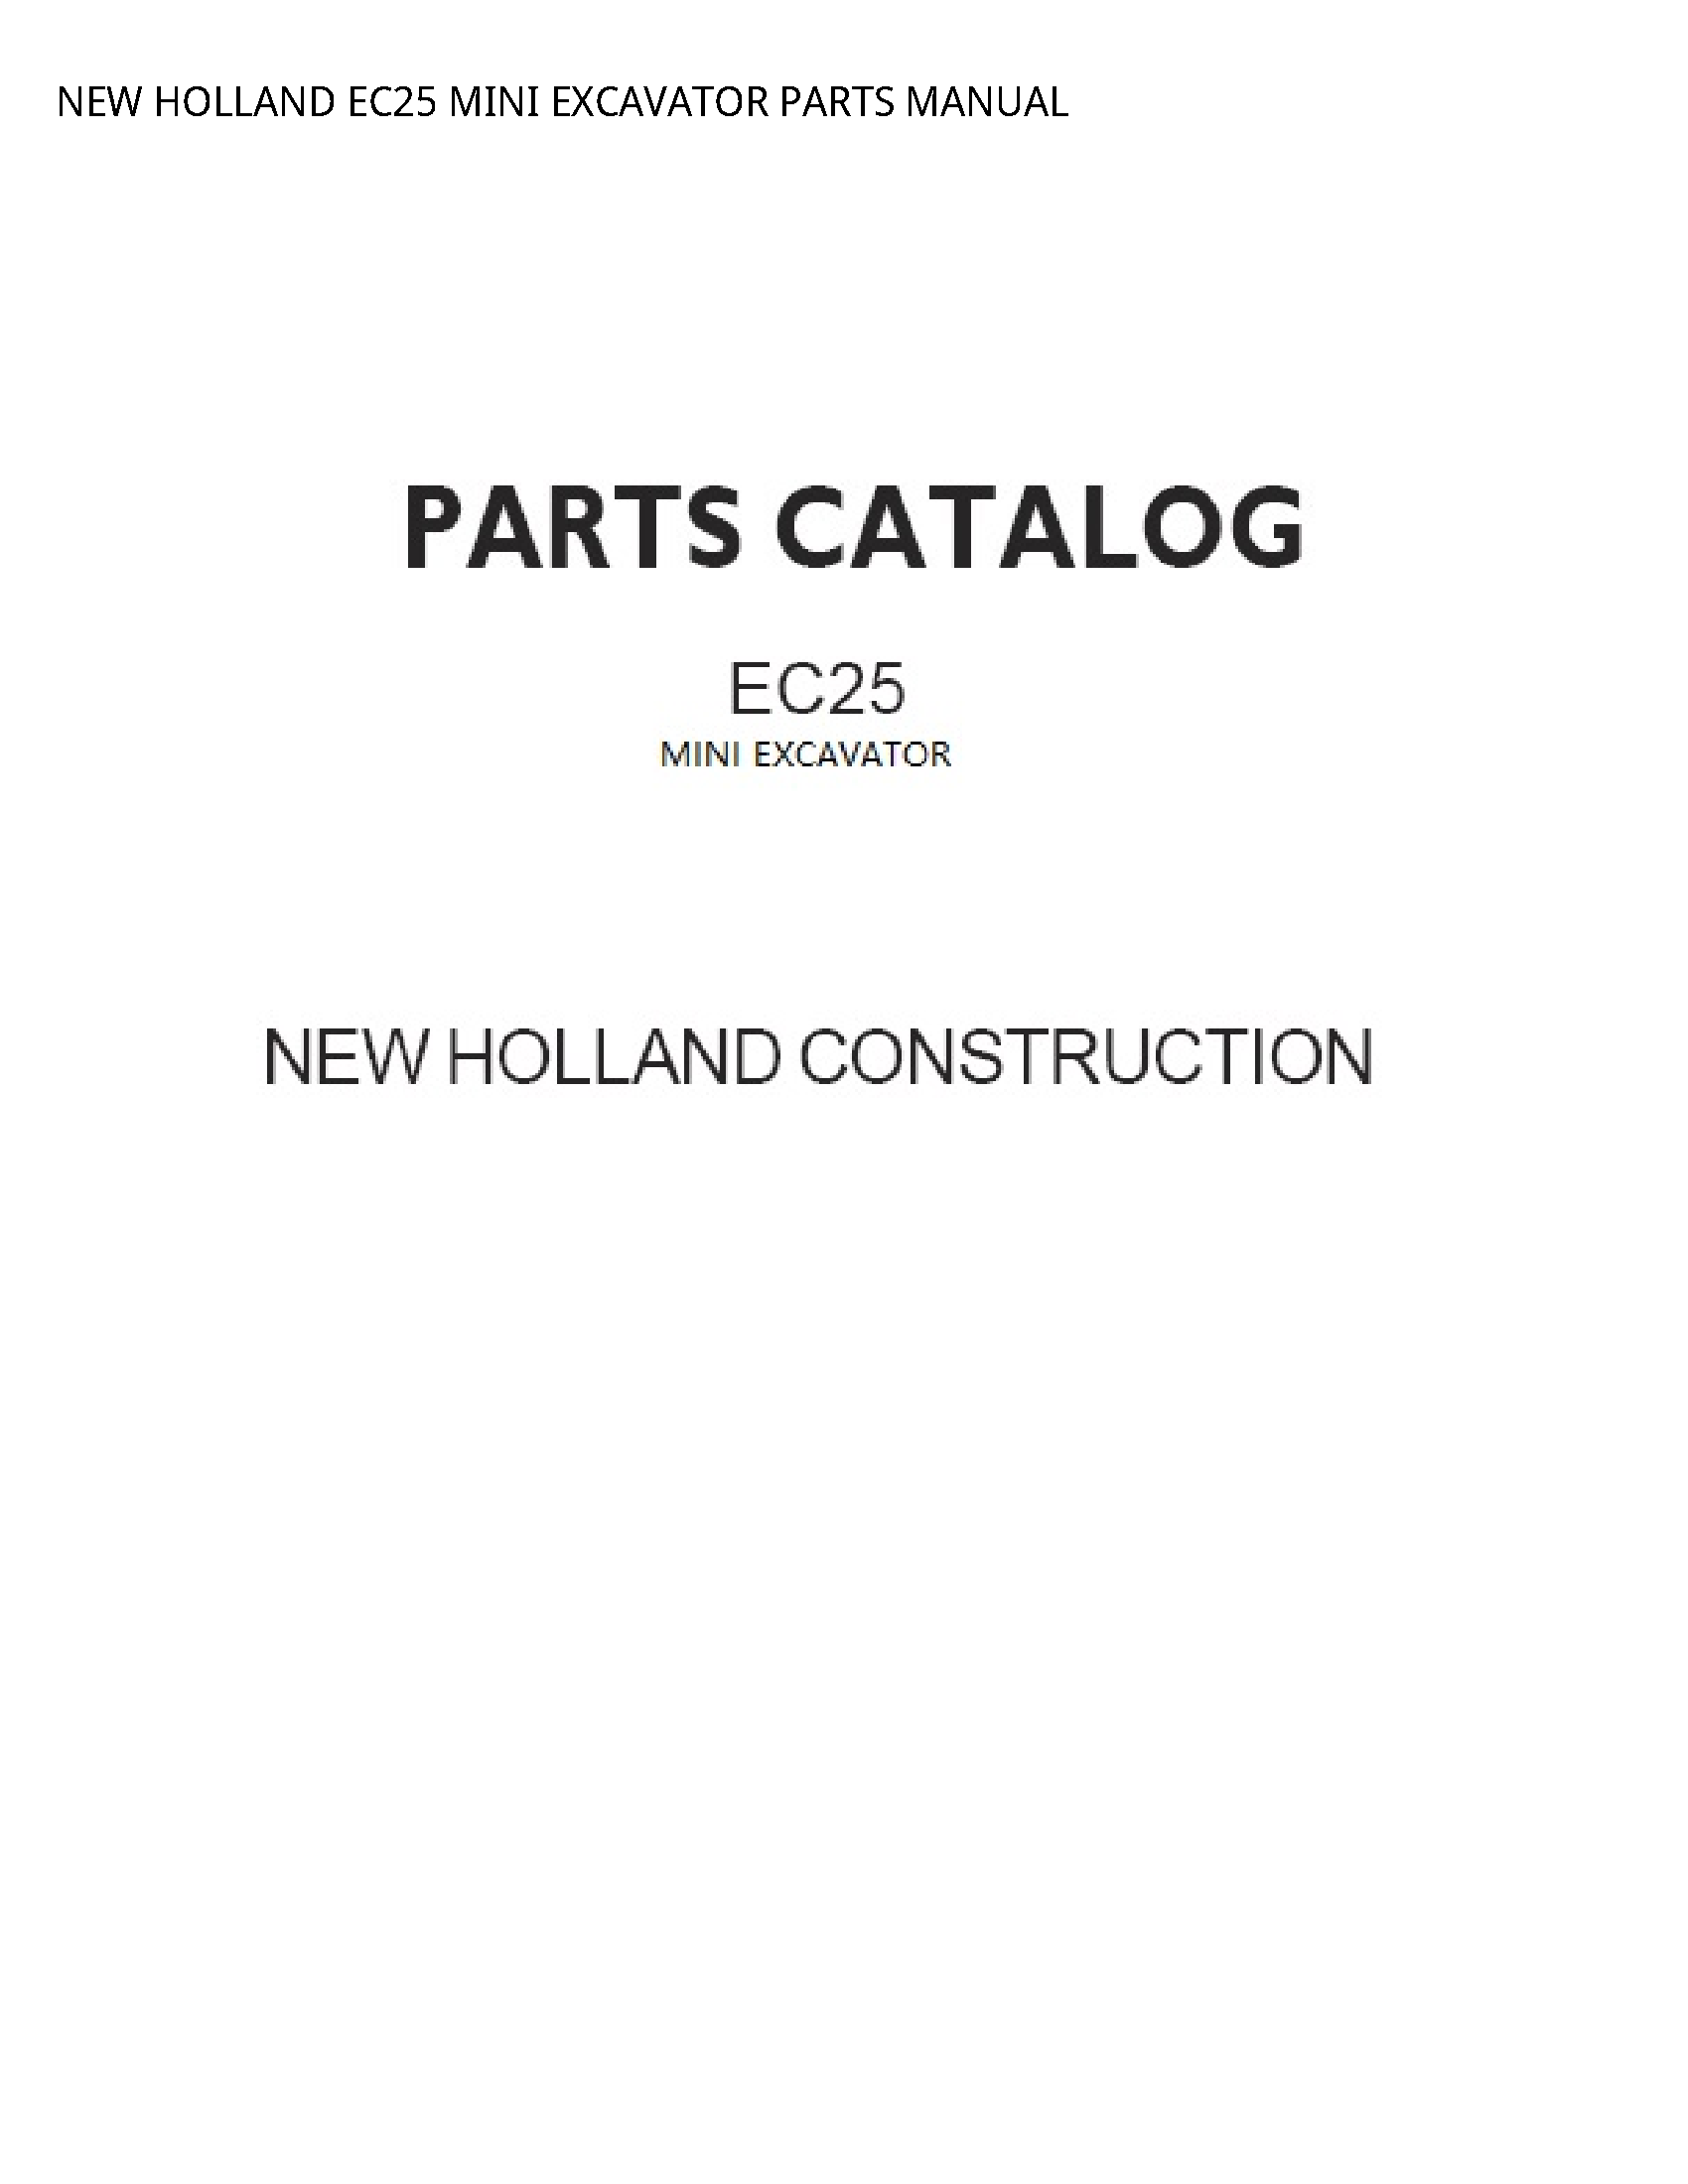 New Holland EC25 MINI EXCAVATOR PARTS manual